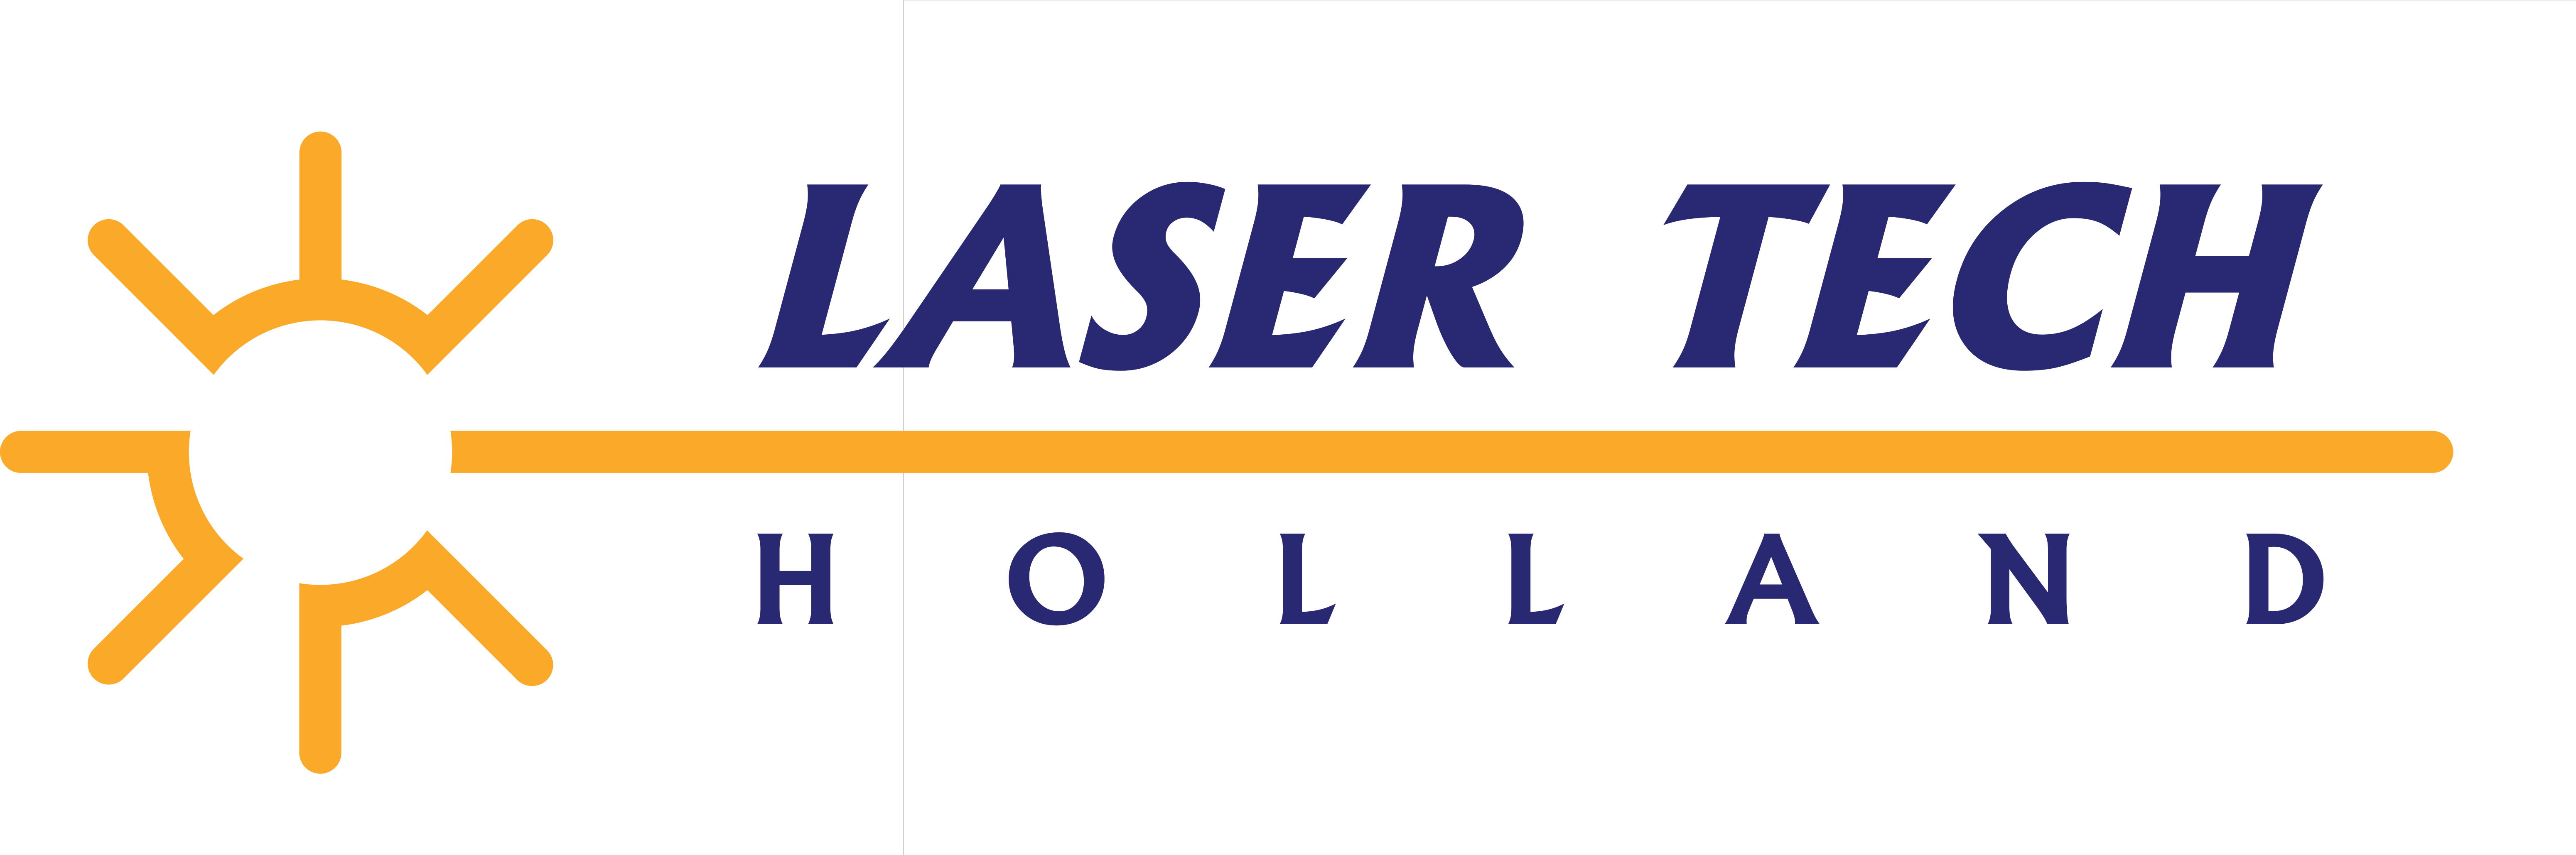 Laser Tech